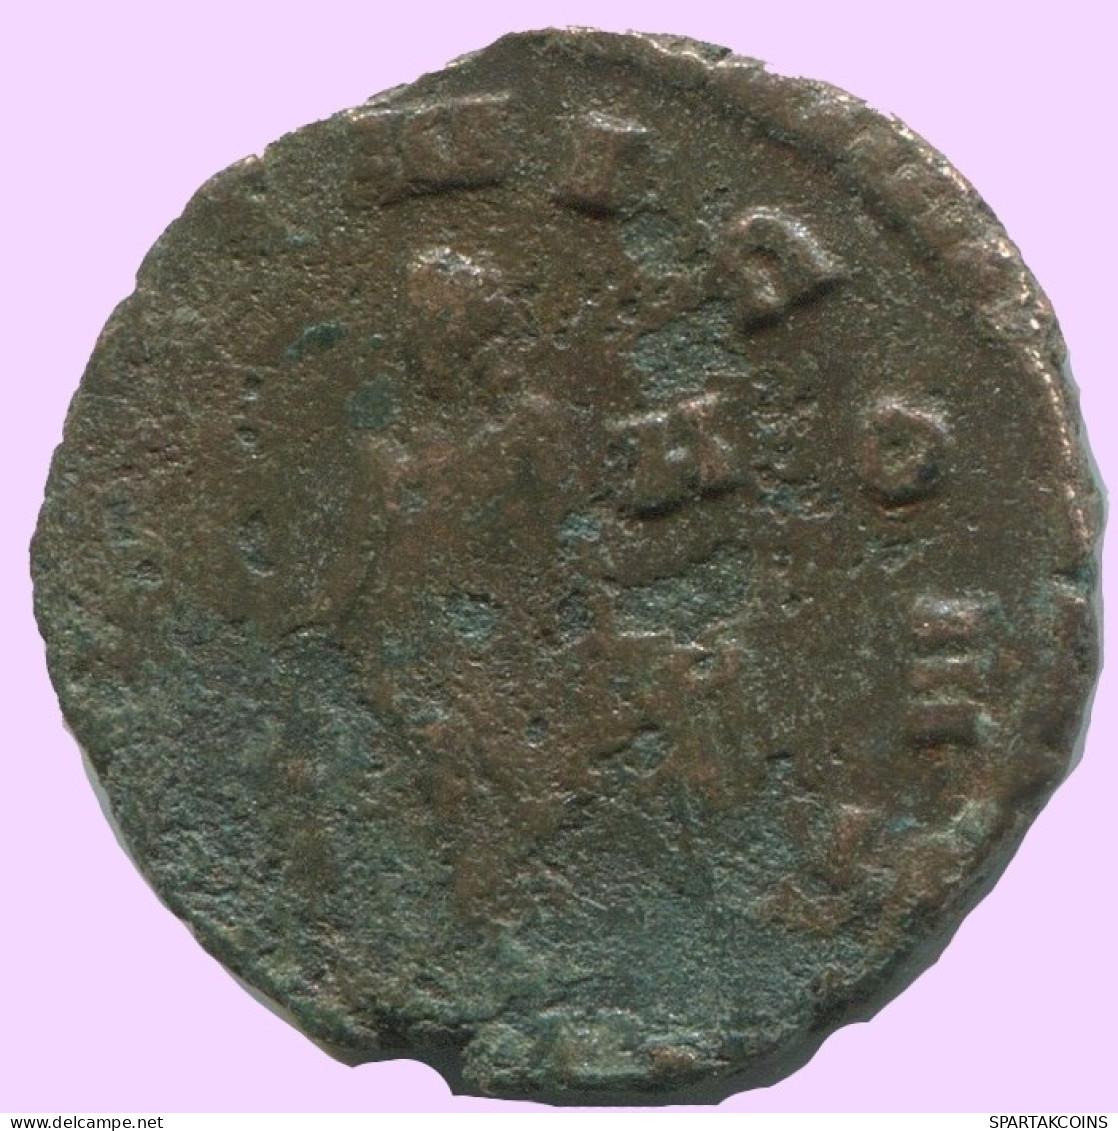 LATE ROMAN IMPERIO Follis Antiguo Auténtico Roman Moneda 2.3g/17mm #ANT2064.7.E.A - Der Spätrömanischen Reich (363 / 476)